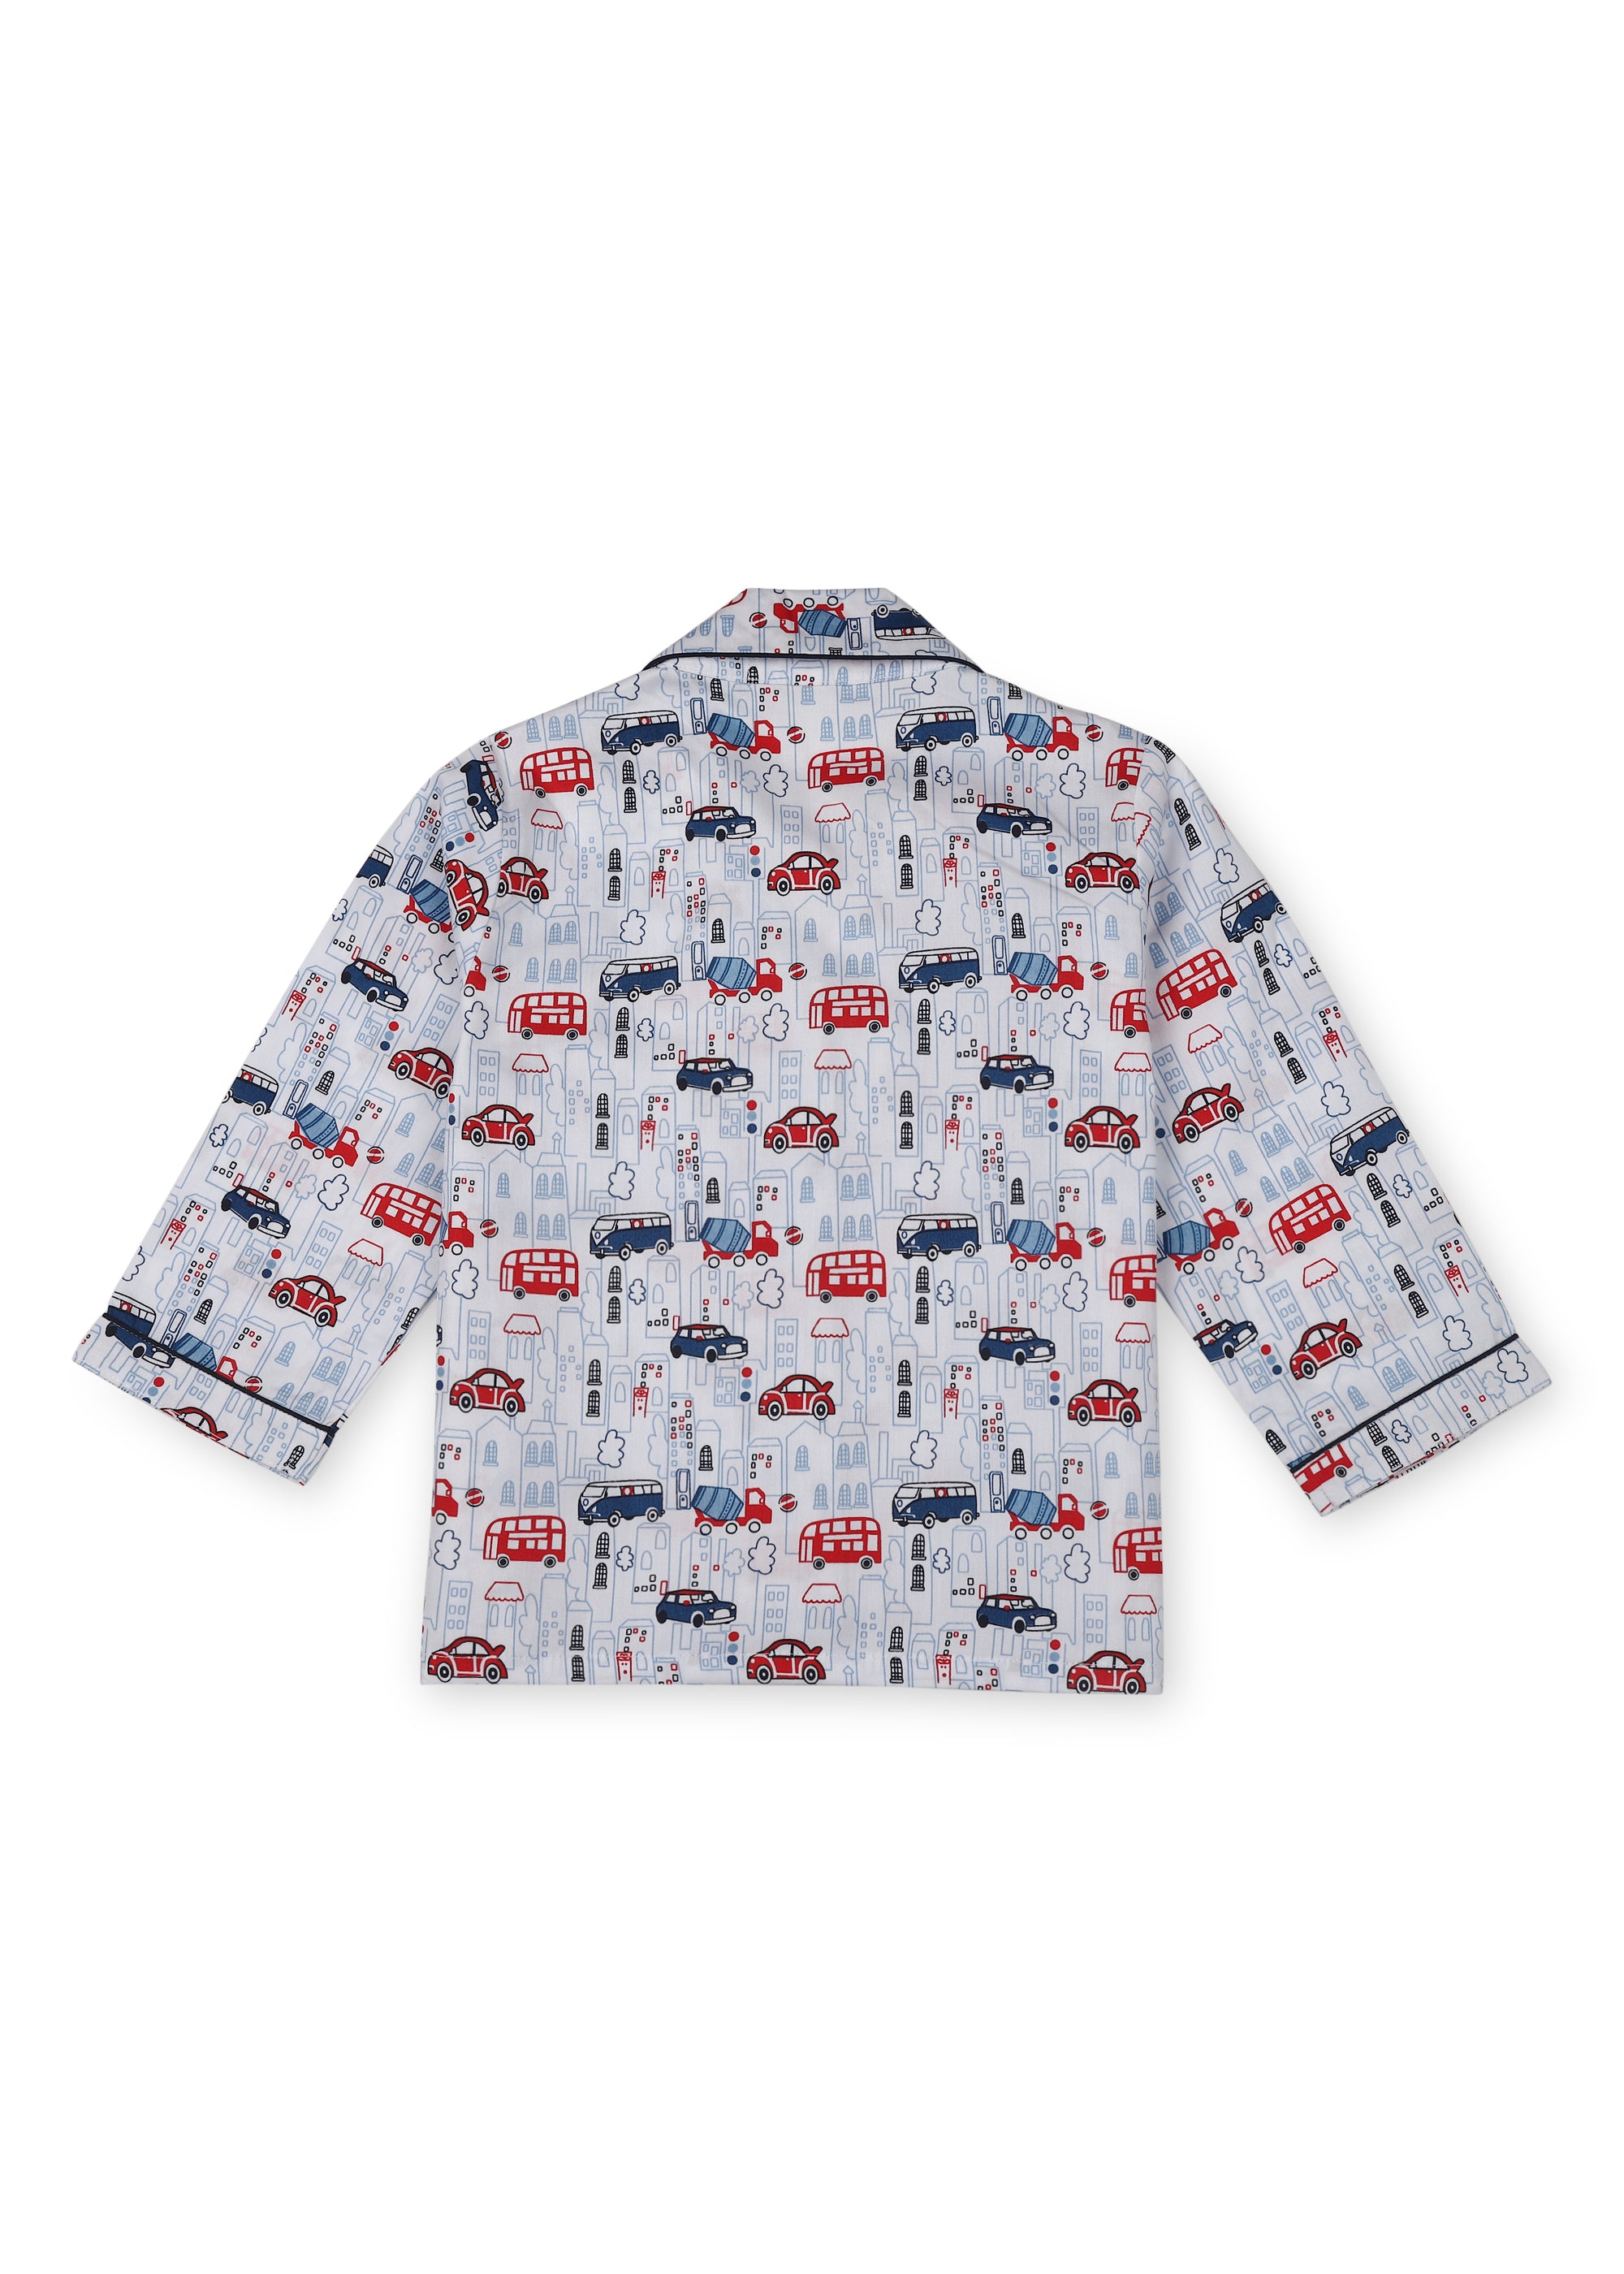 Red Bus Print Long Sleeve Kids Night Suit - Shopbloom